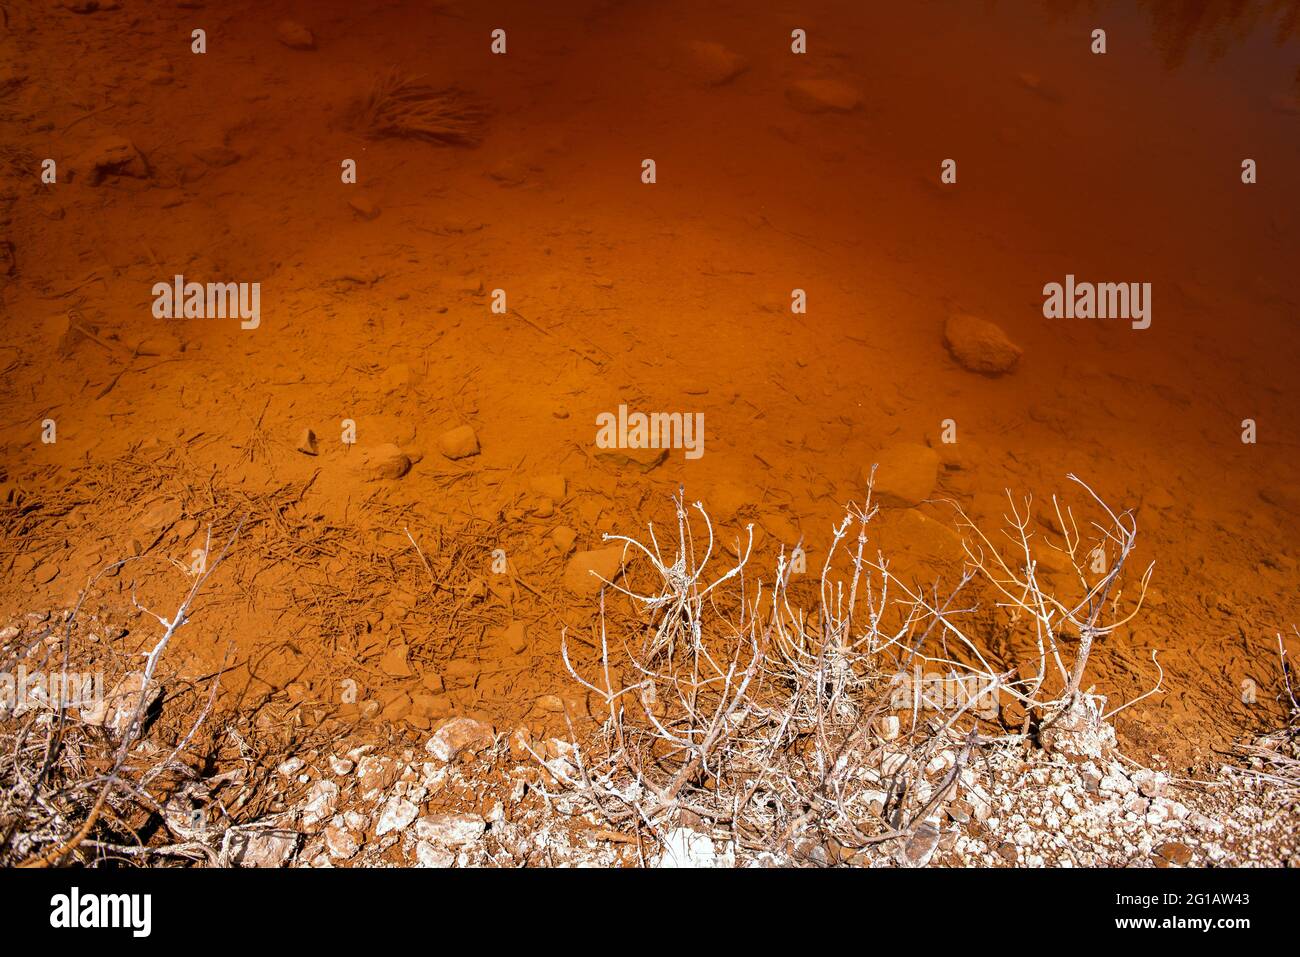 Rive d'un lac toxique dans une mine de fonte abandonnée. Eau acide rouge riche en métaux lourds, plantes mortes couvertes de produits chimiques Banque D'Images